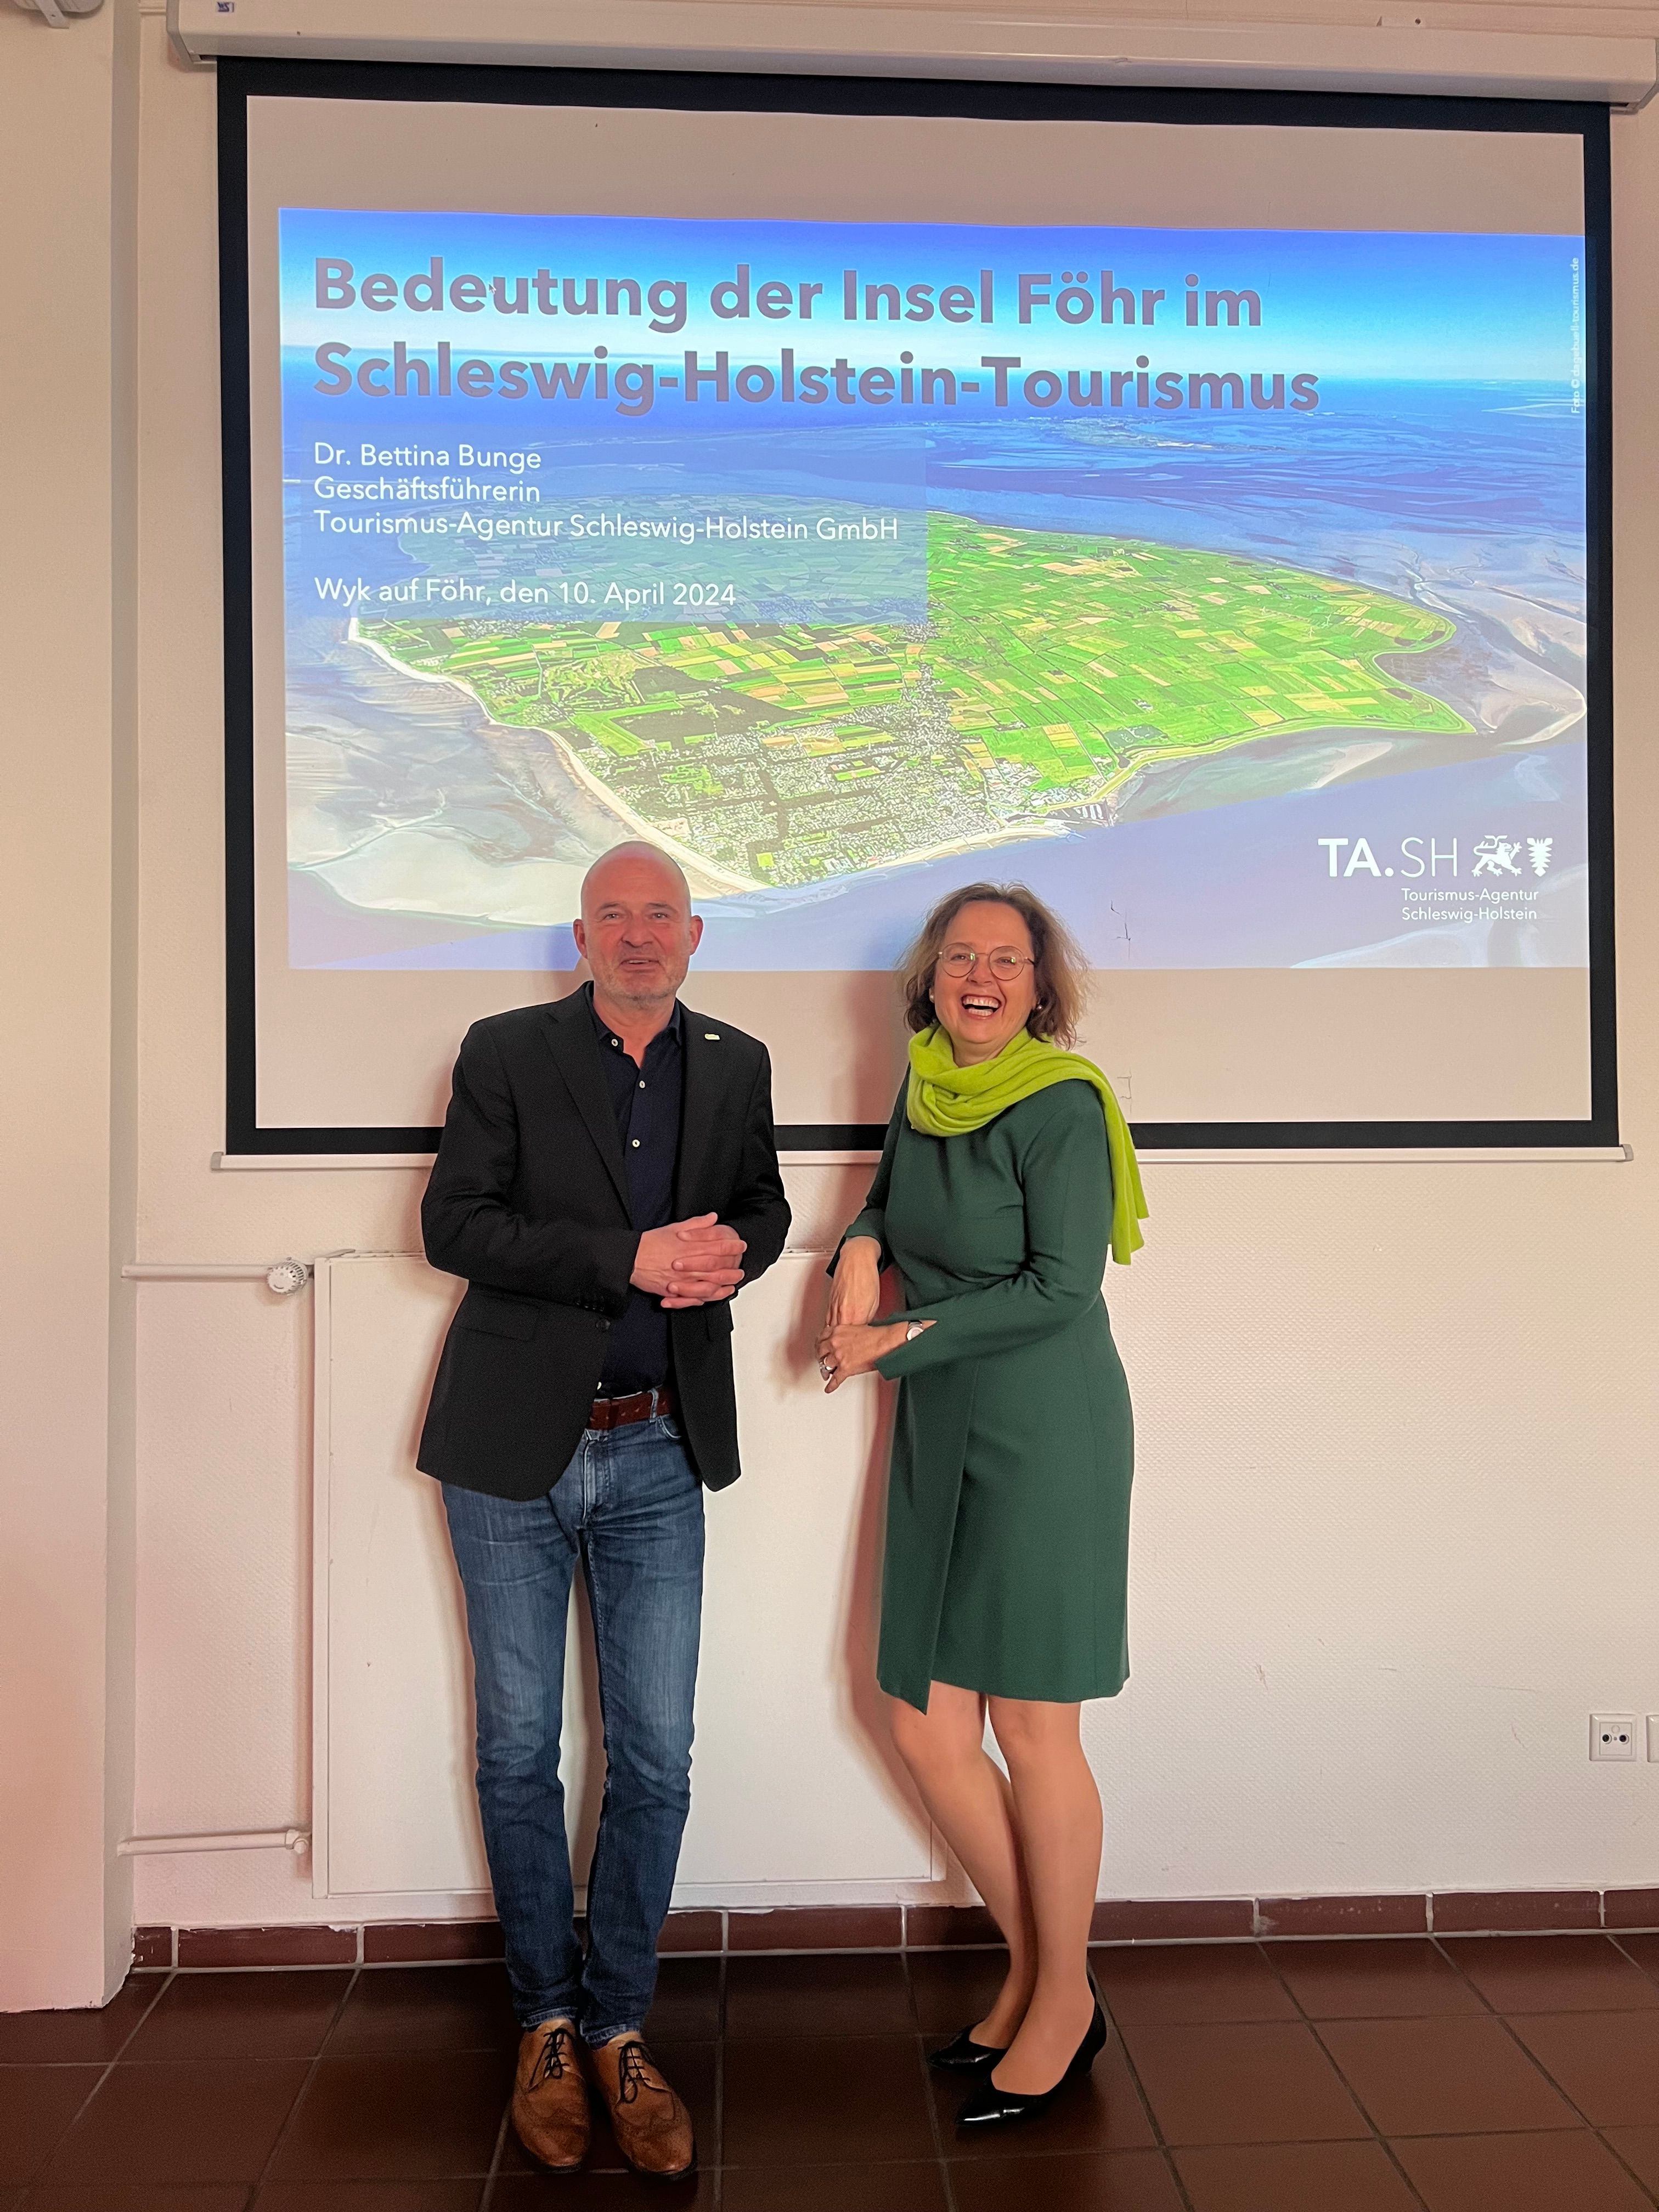 Dr. Bettina Bunge, Geschäftsführerin der TA.SH, und Jochen Gemeinhardt, Geschäftsführer der Föhr Tourismus GmbH, bei Bunges Vortrag in Wyk auf Föhr.